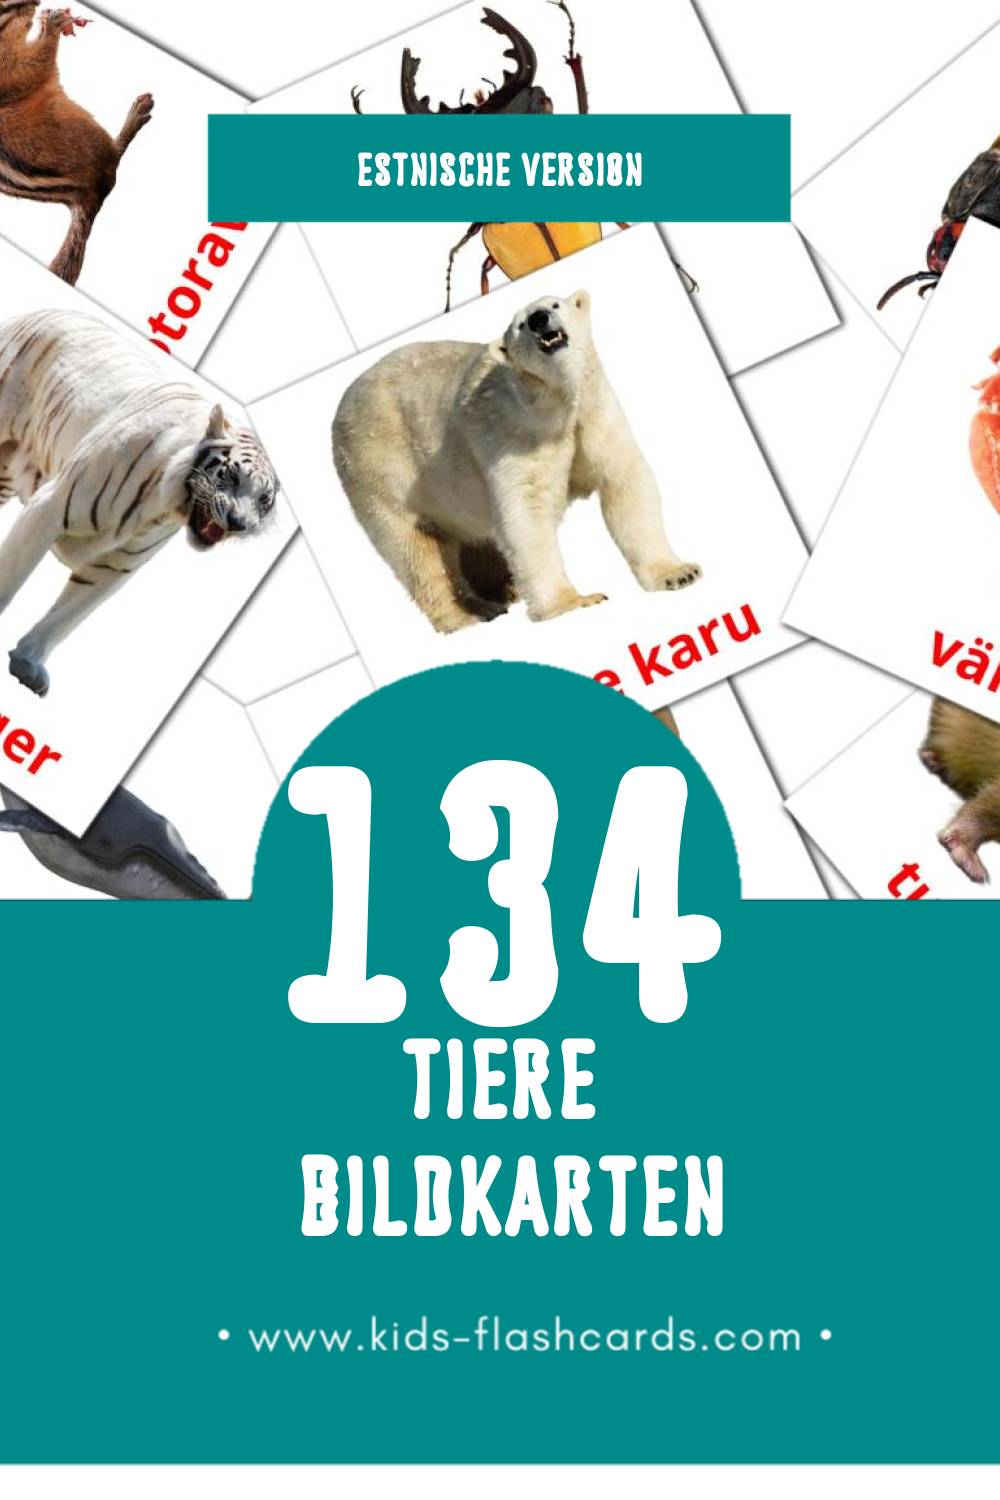 Visual LOOMAD Flashcards für Kleinkinder (134 Karten in Estnisch)